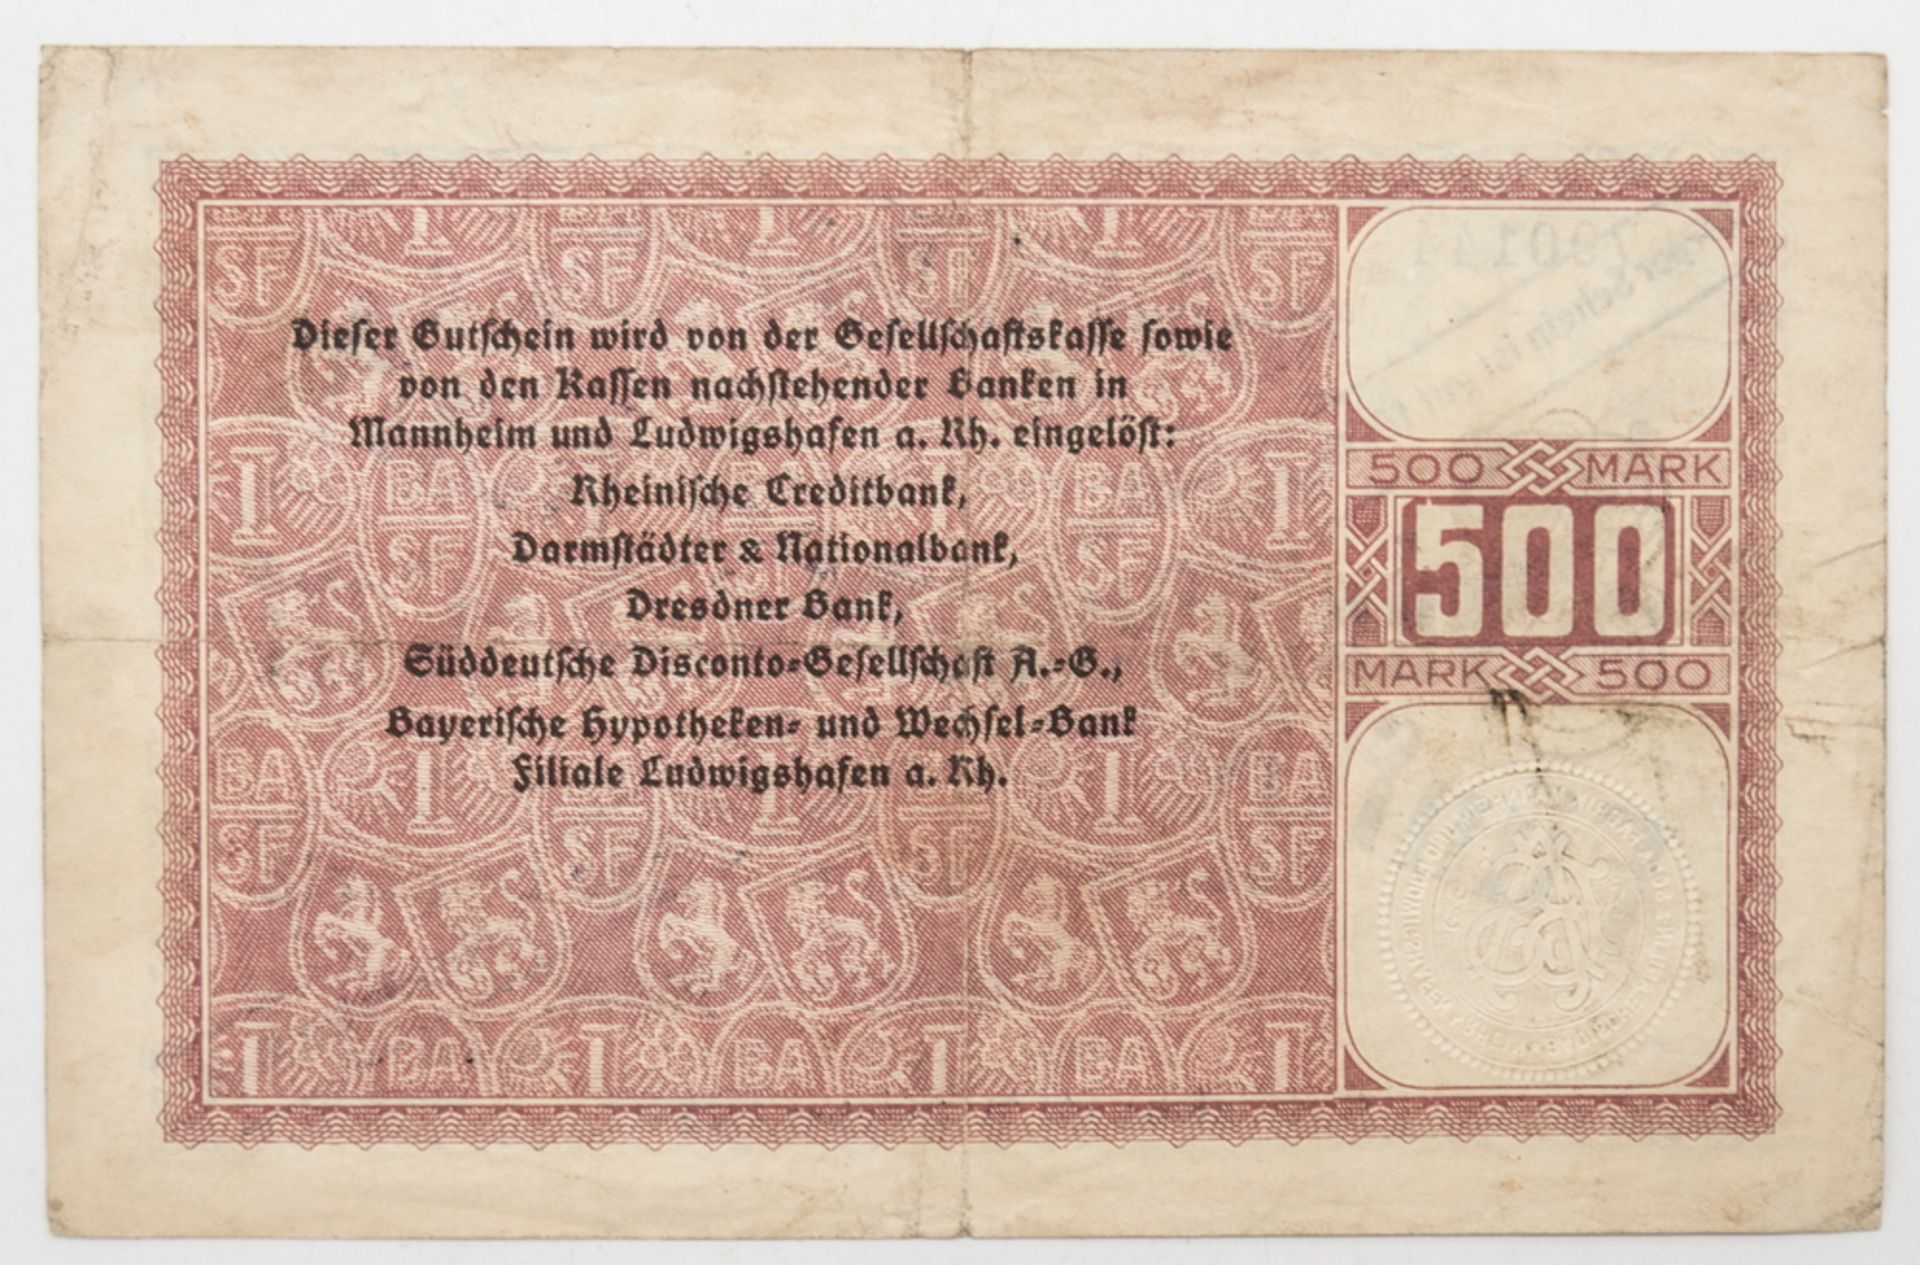 Deutschland 1922, BASF Ludwigshafen a. Rhein, Notgeld 5 Millionen Mark. Erhaltung: ss. - Bild 2 aus 2